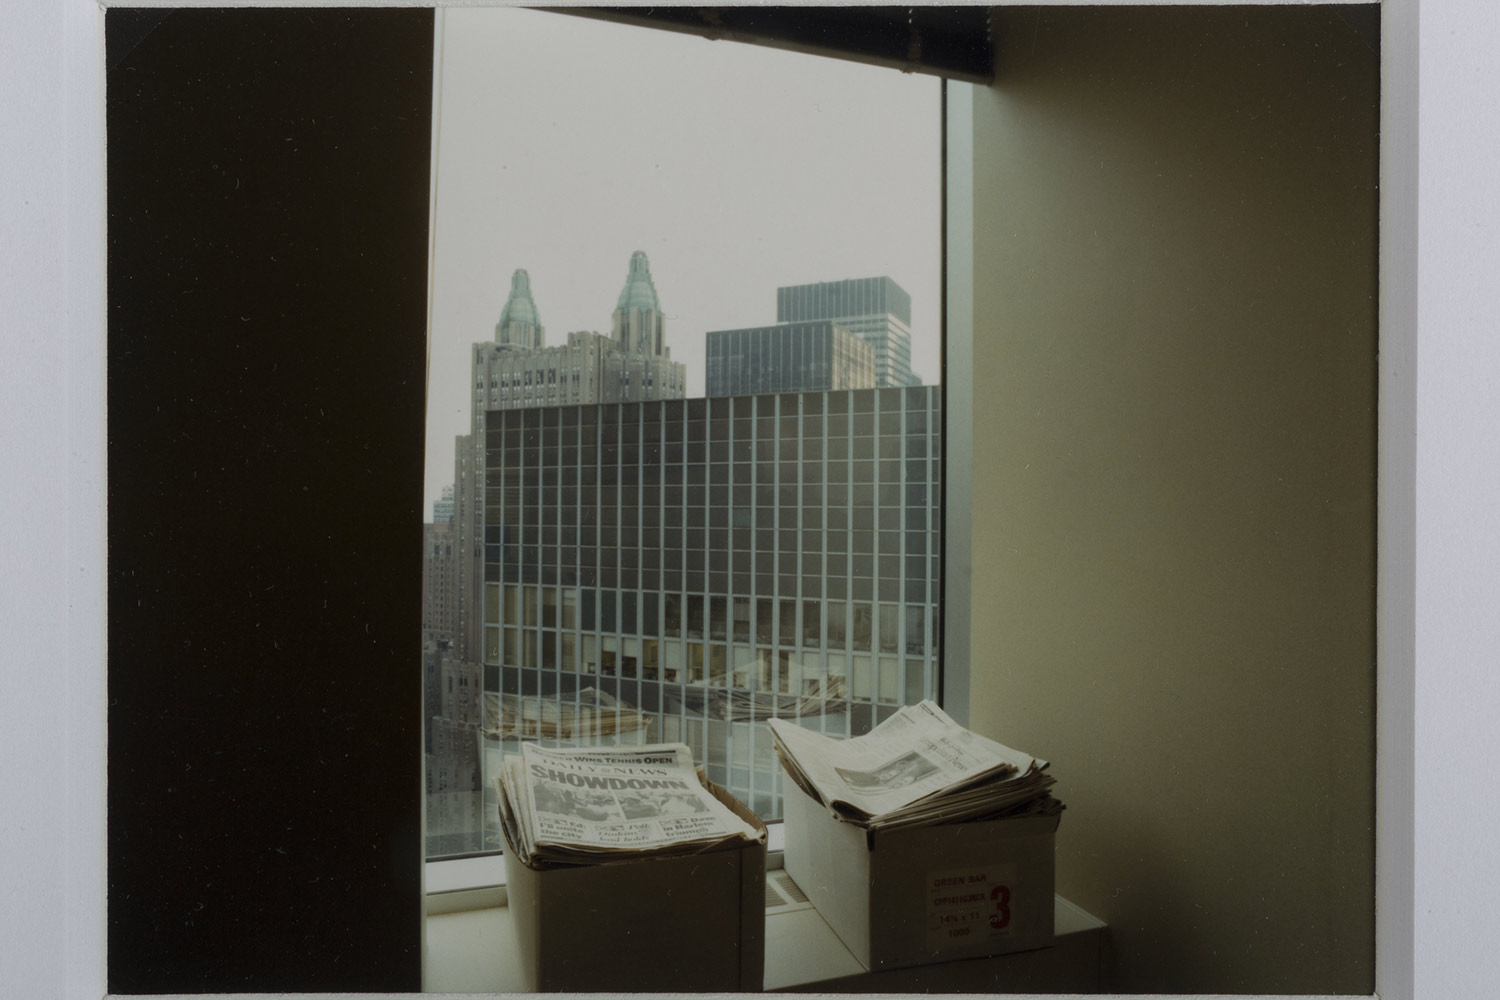 Luigi Ghirri New York, 1989 serie Atlante metropolitano stampa cromogenica da negativo 8x10 cm Collezione privata © Eredi Luigi Ghirri